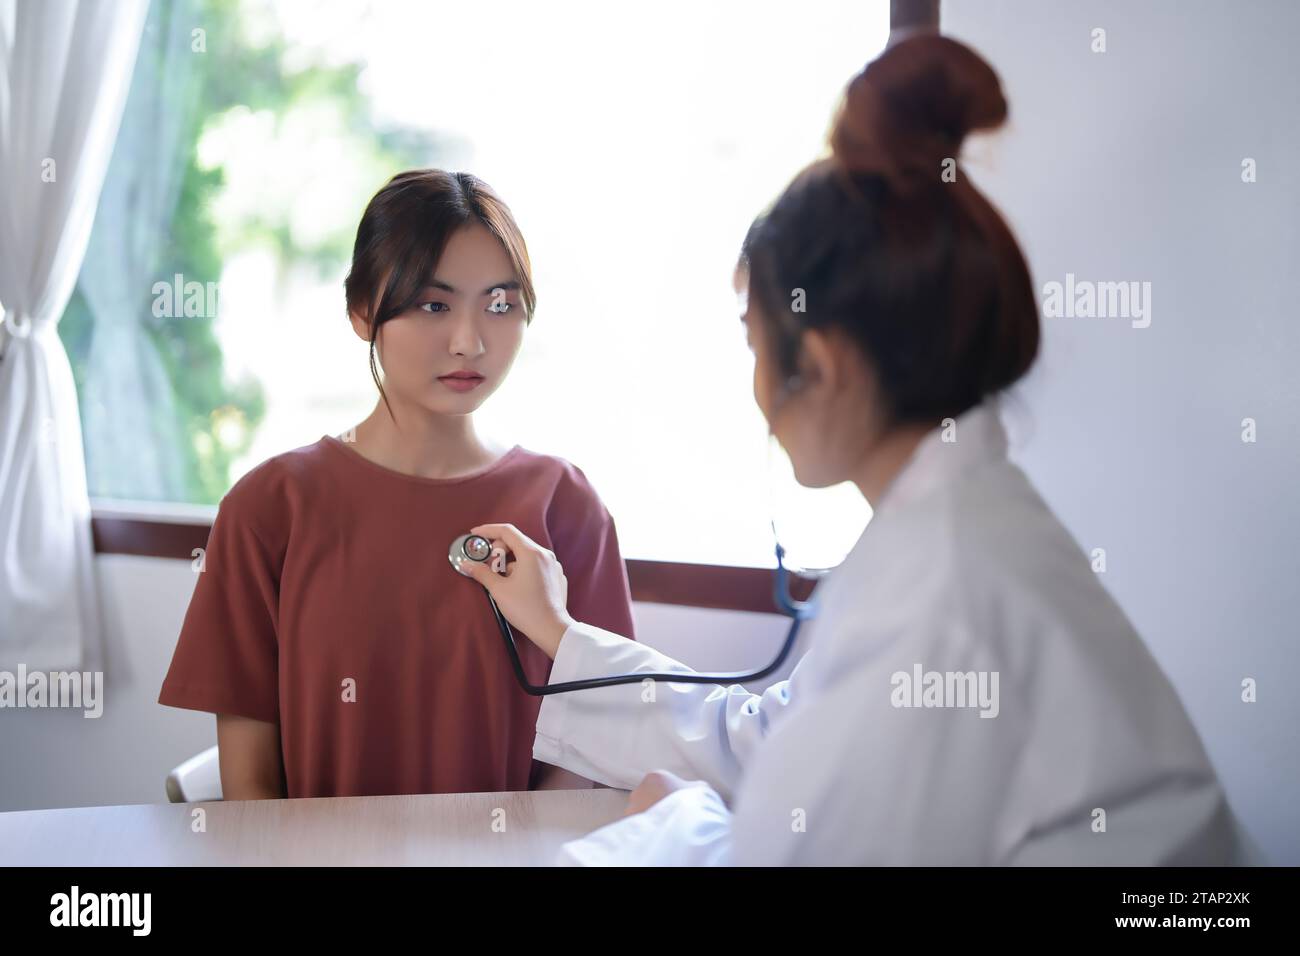 Femmes psychologue asiatique écoutant le rythme cardiaque du patient avec stéthoscope et donnant des conseils sur la thérapie de santé mentale tandis que le stress du patient féminin Banque D'Images